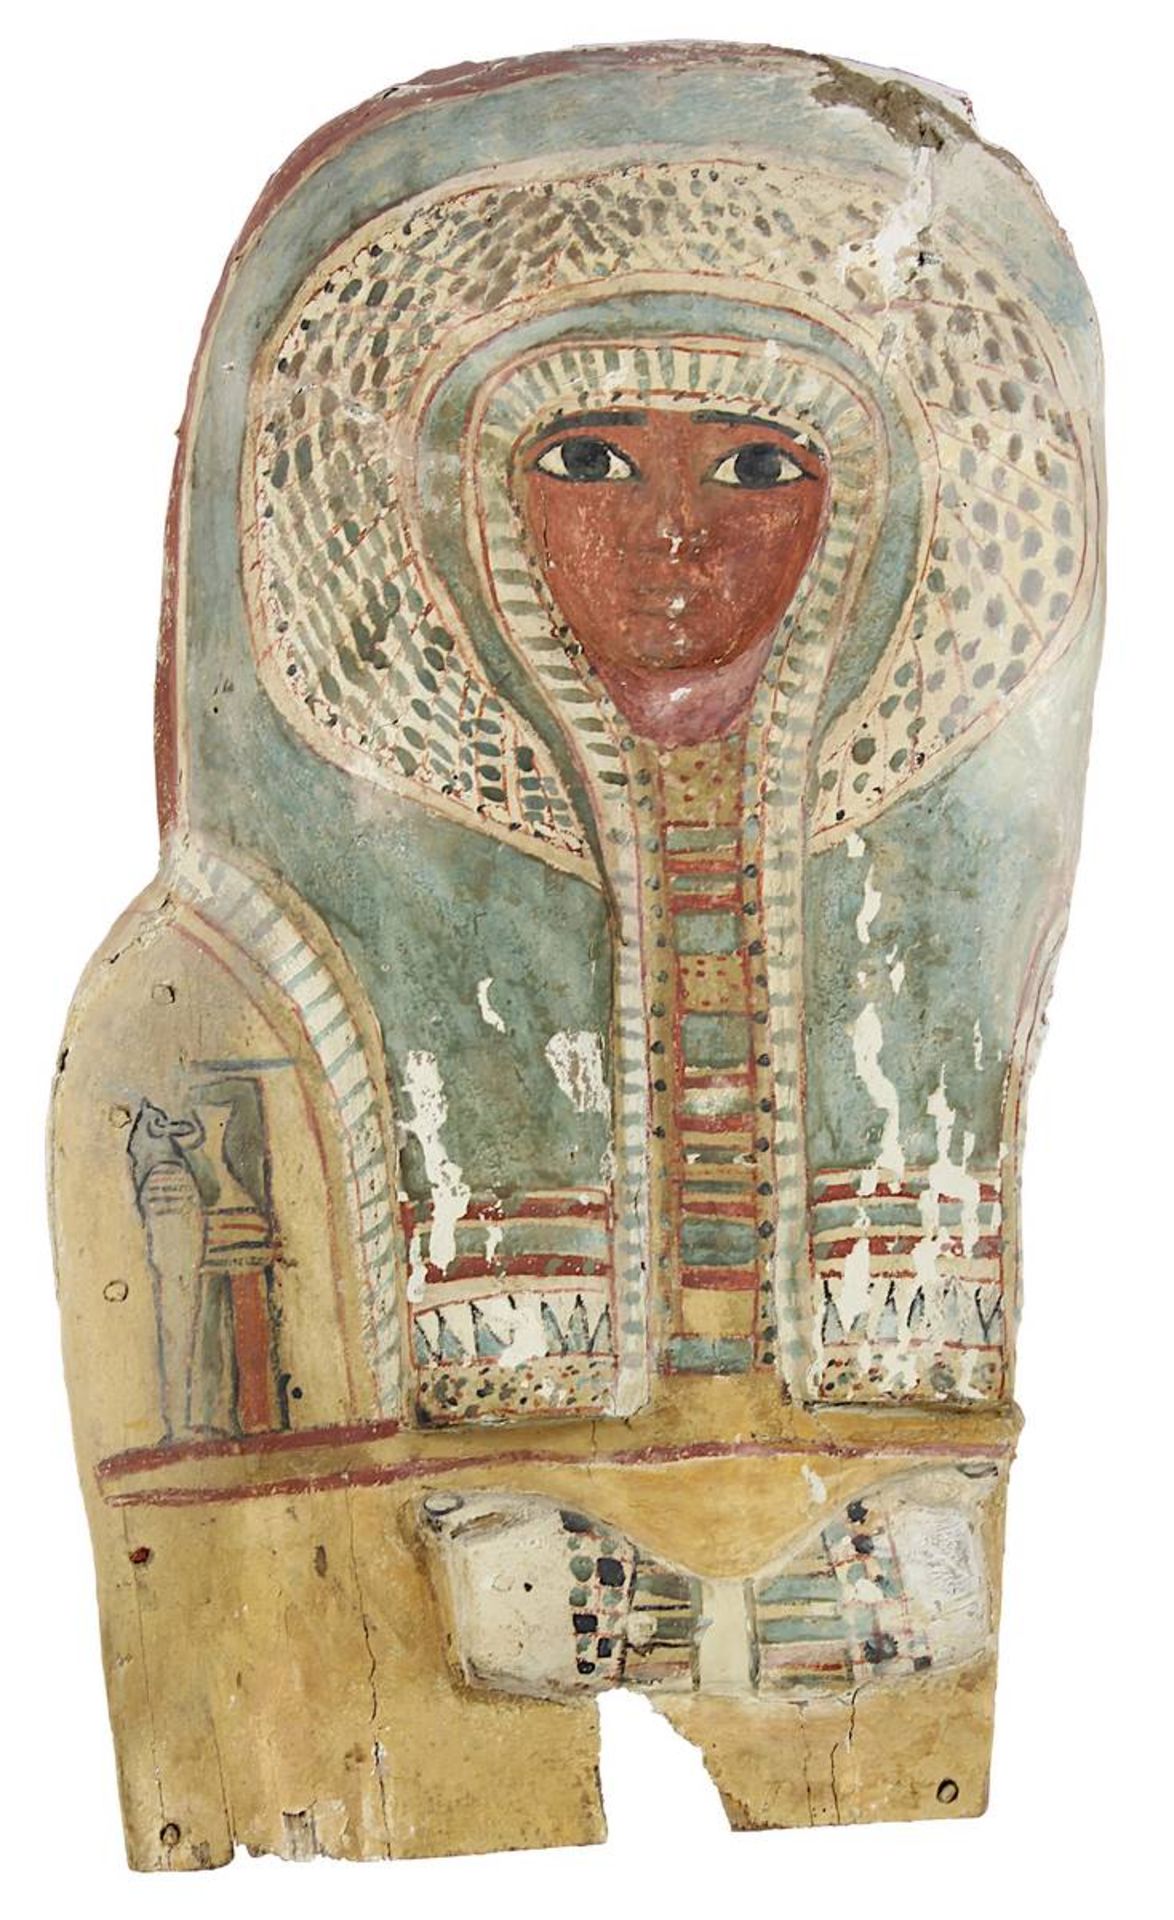 Ägyptische Sarkophag-Maske, spät-ptolemäisch, griechisch-römisches Ägypten ca. 6.-2. Jh. v. Chr.,